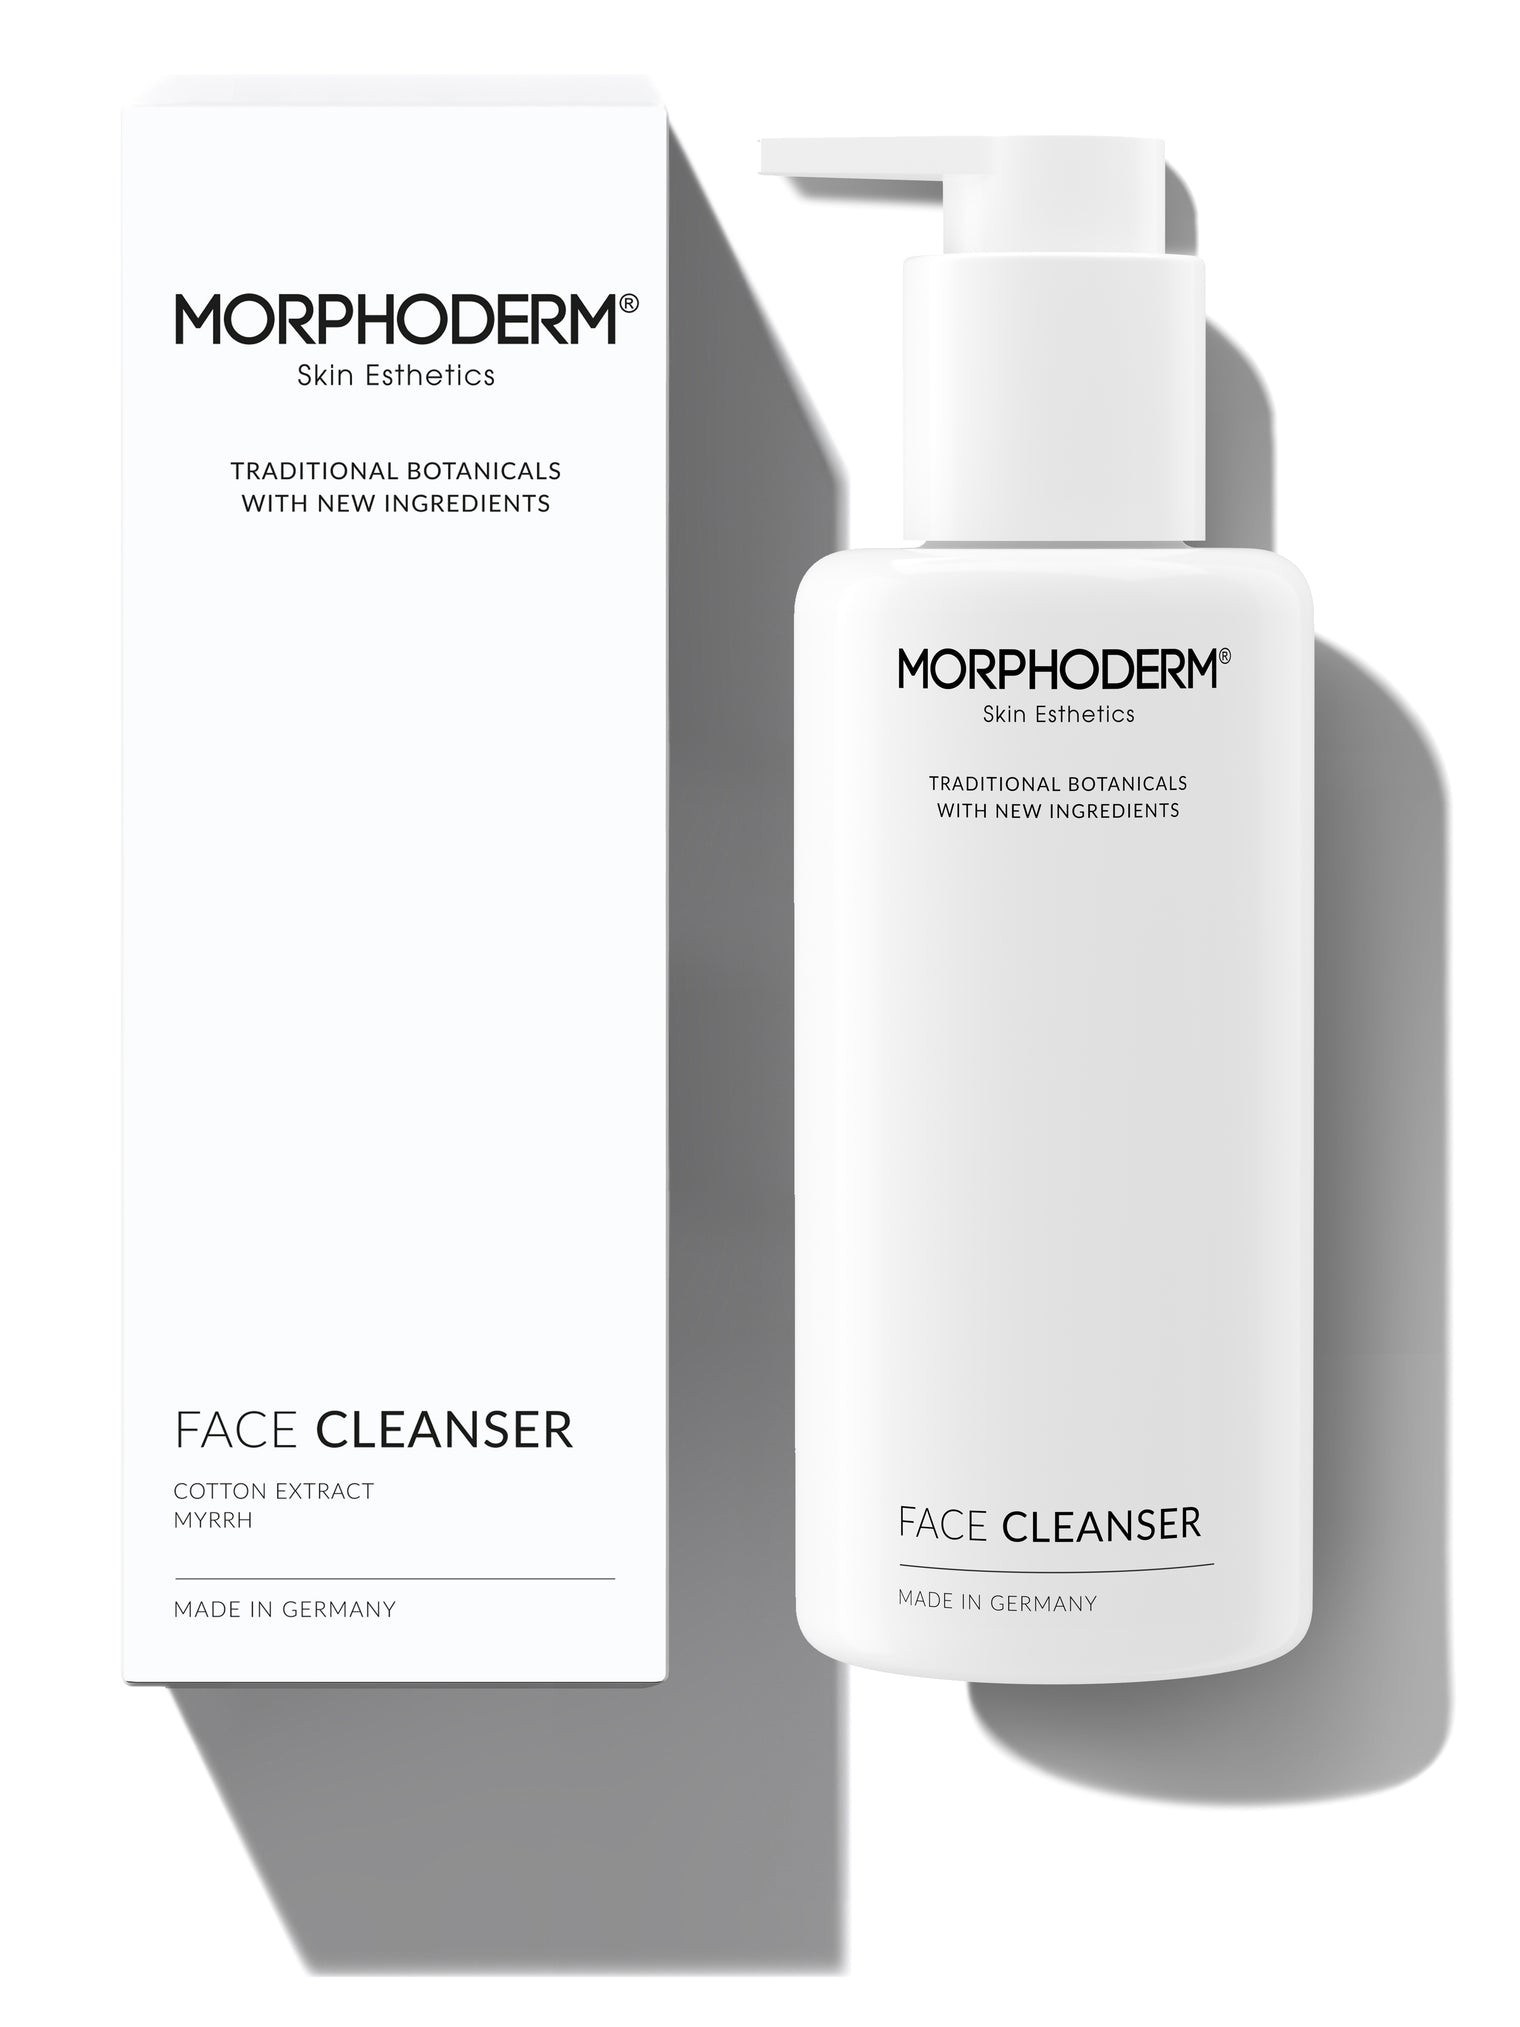 Für eine Haut, die sich nicht nur sauber anfühlt, sondern auch gesund aussieht - der Morphoderm FACE CLEANSER.